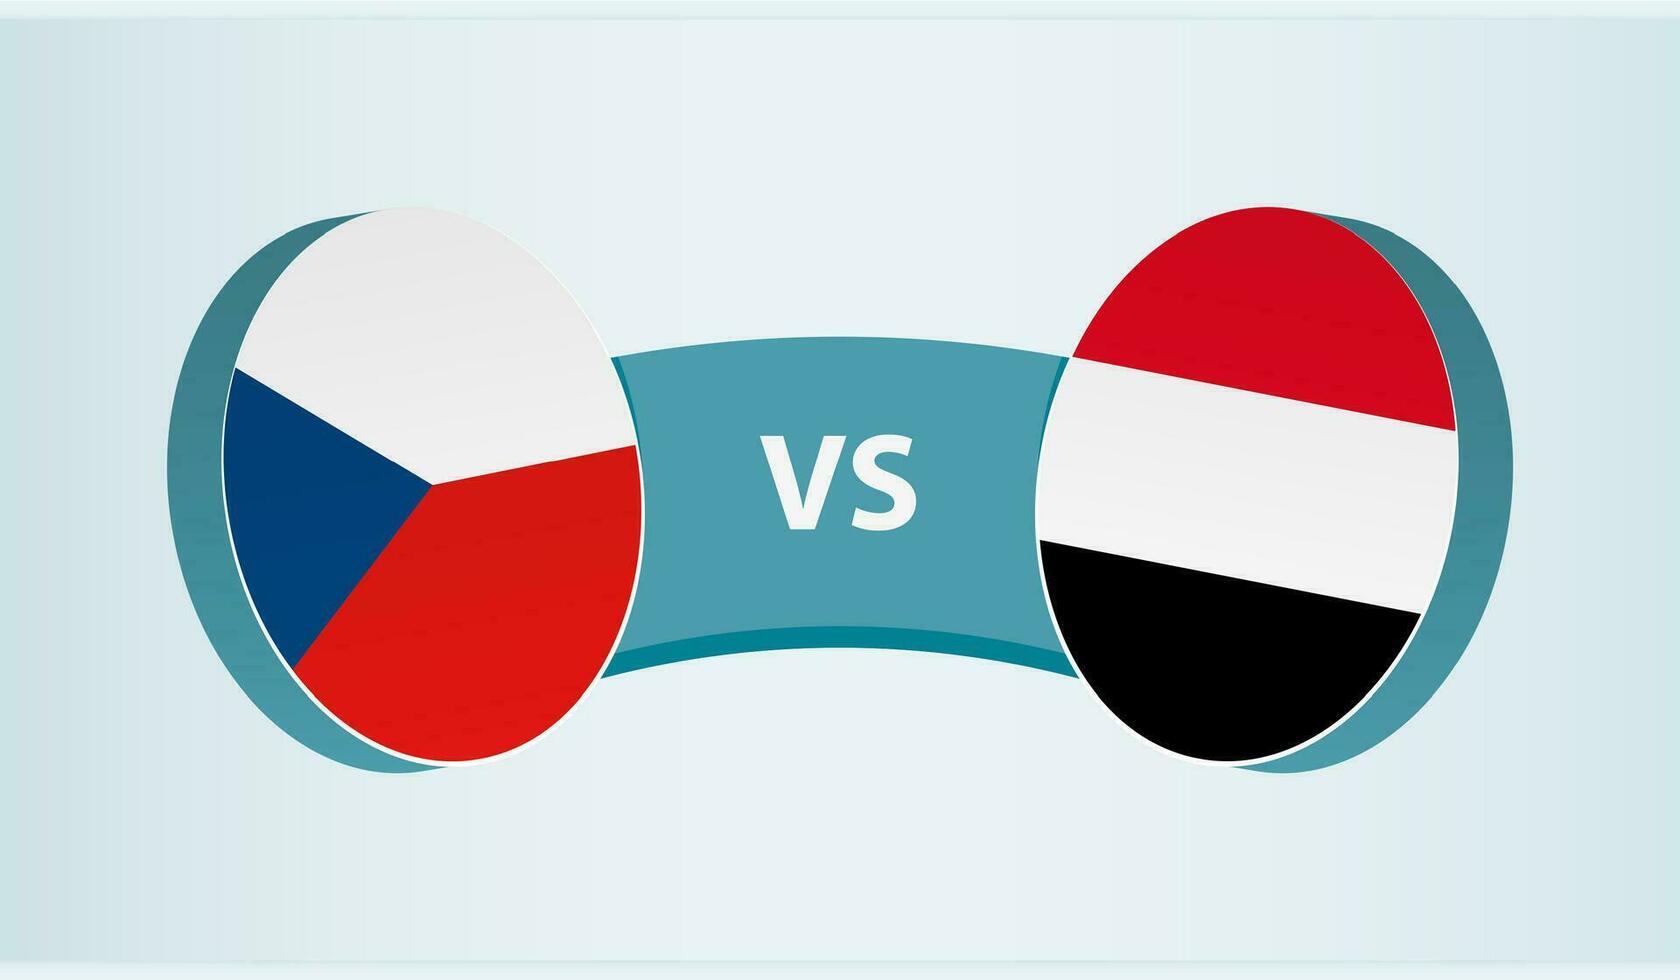 tchèque république contre Yémen, équipe des sports compétition concept. vecteur